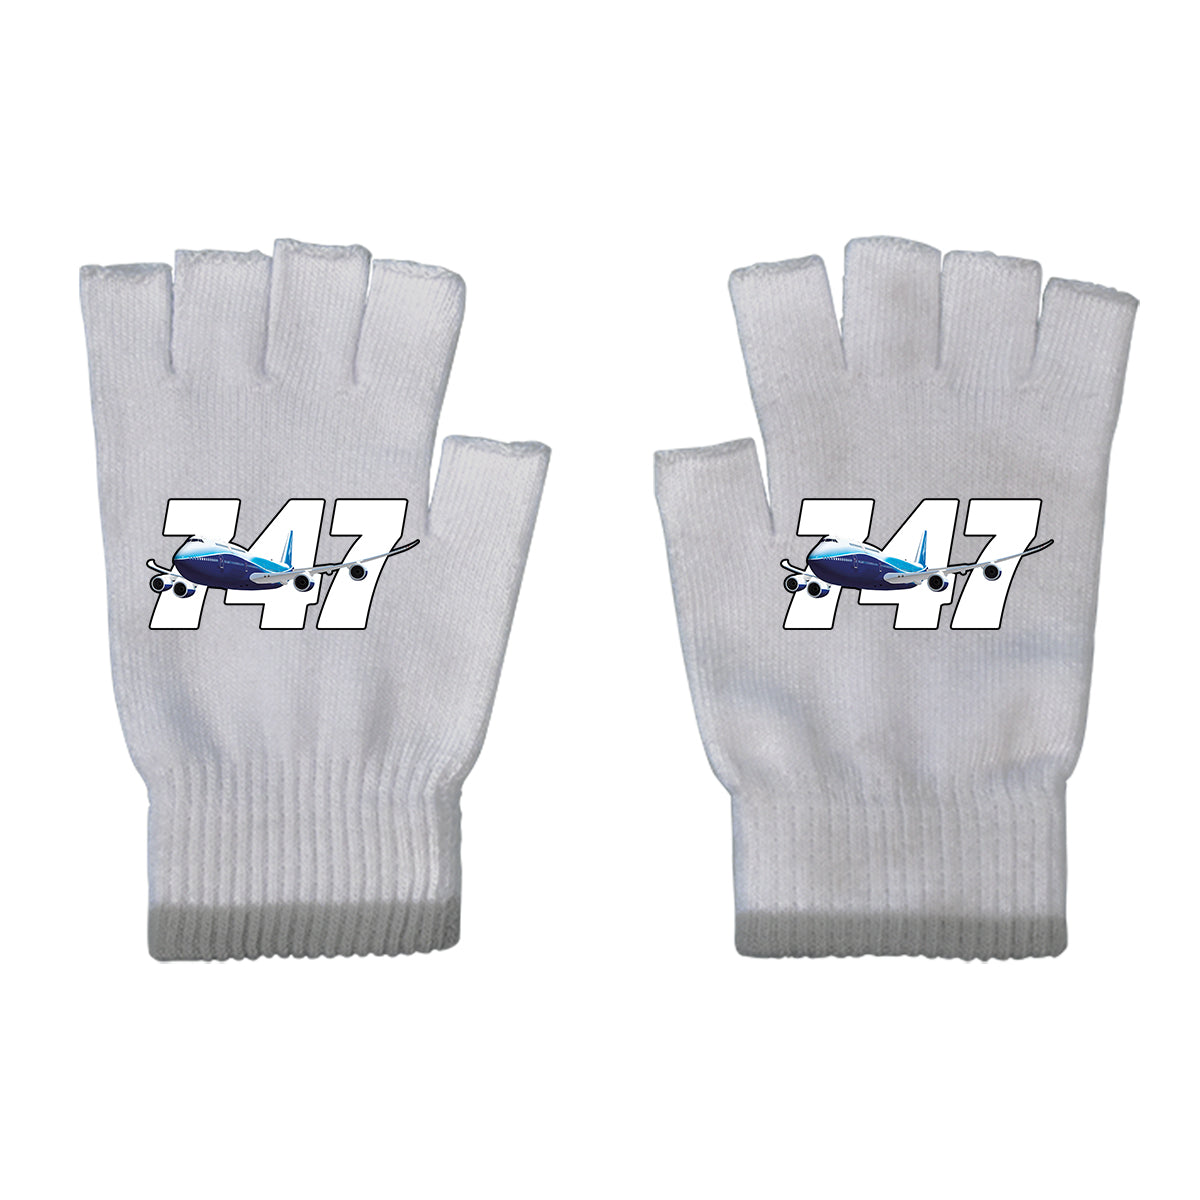 Super Boeing 747 Designed Cut Gloves